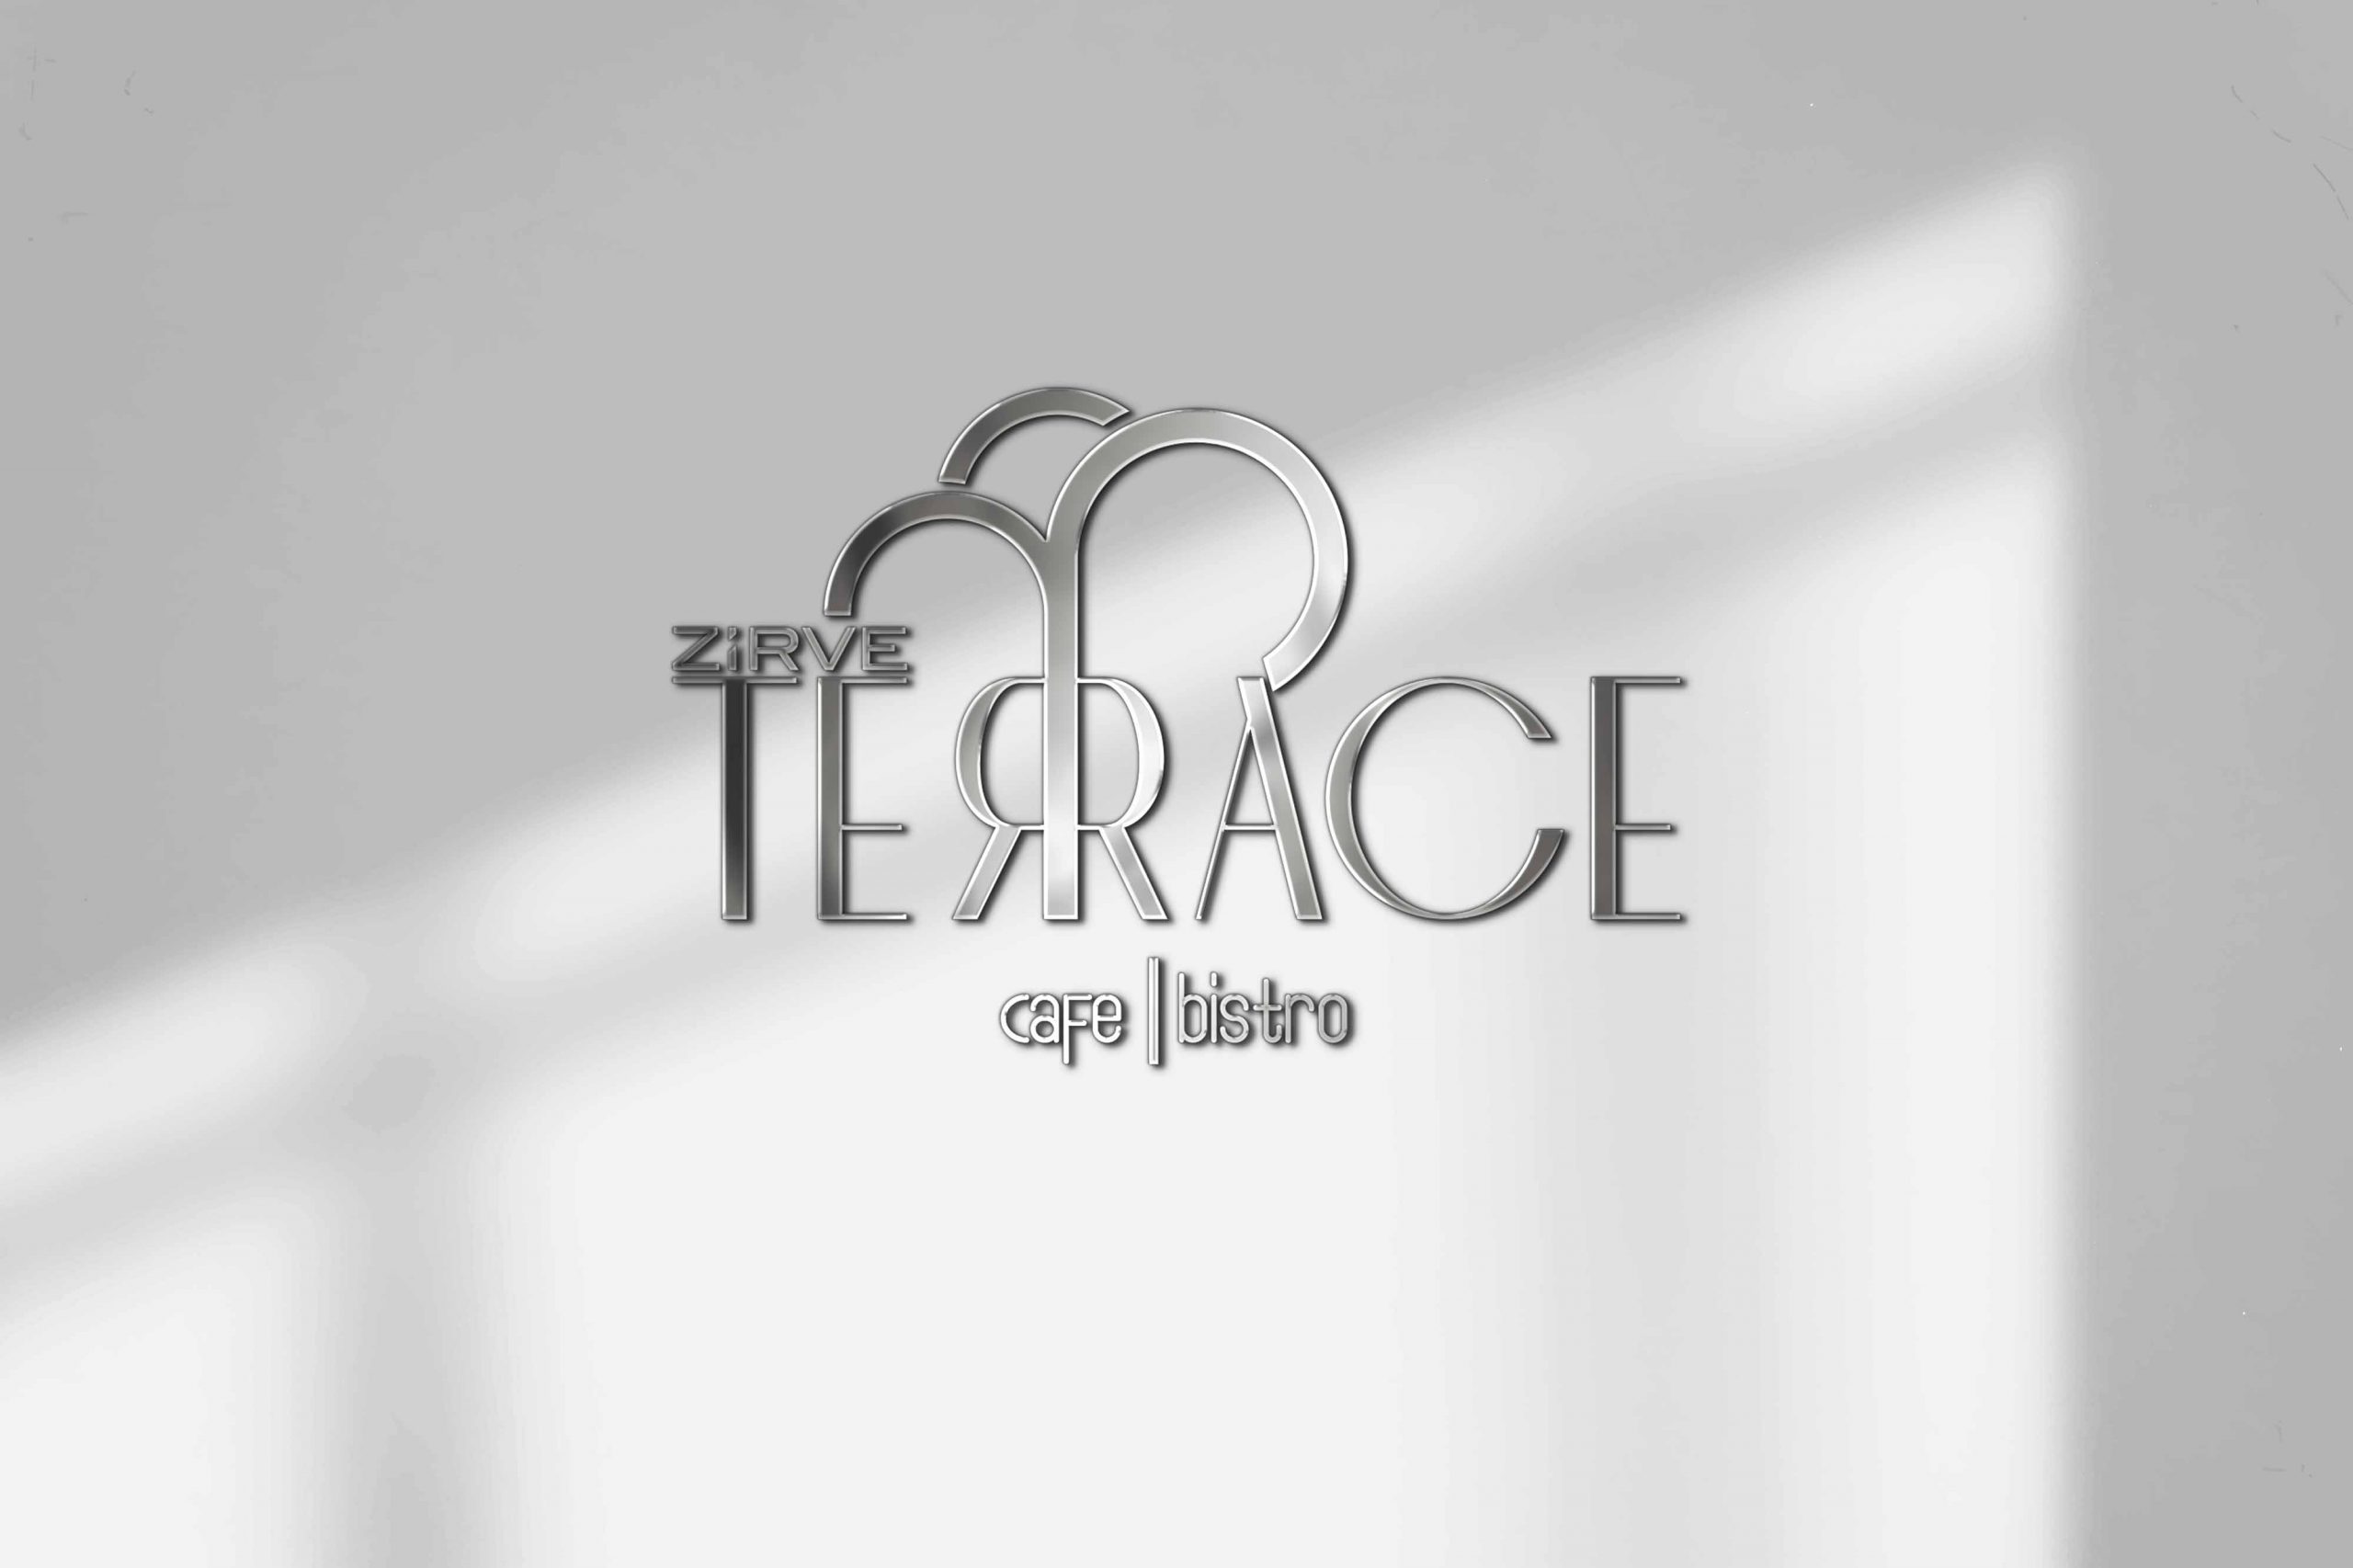 Zirve Terrace